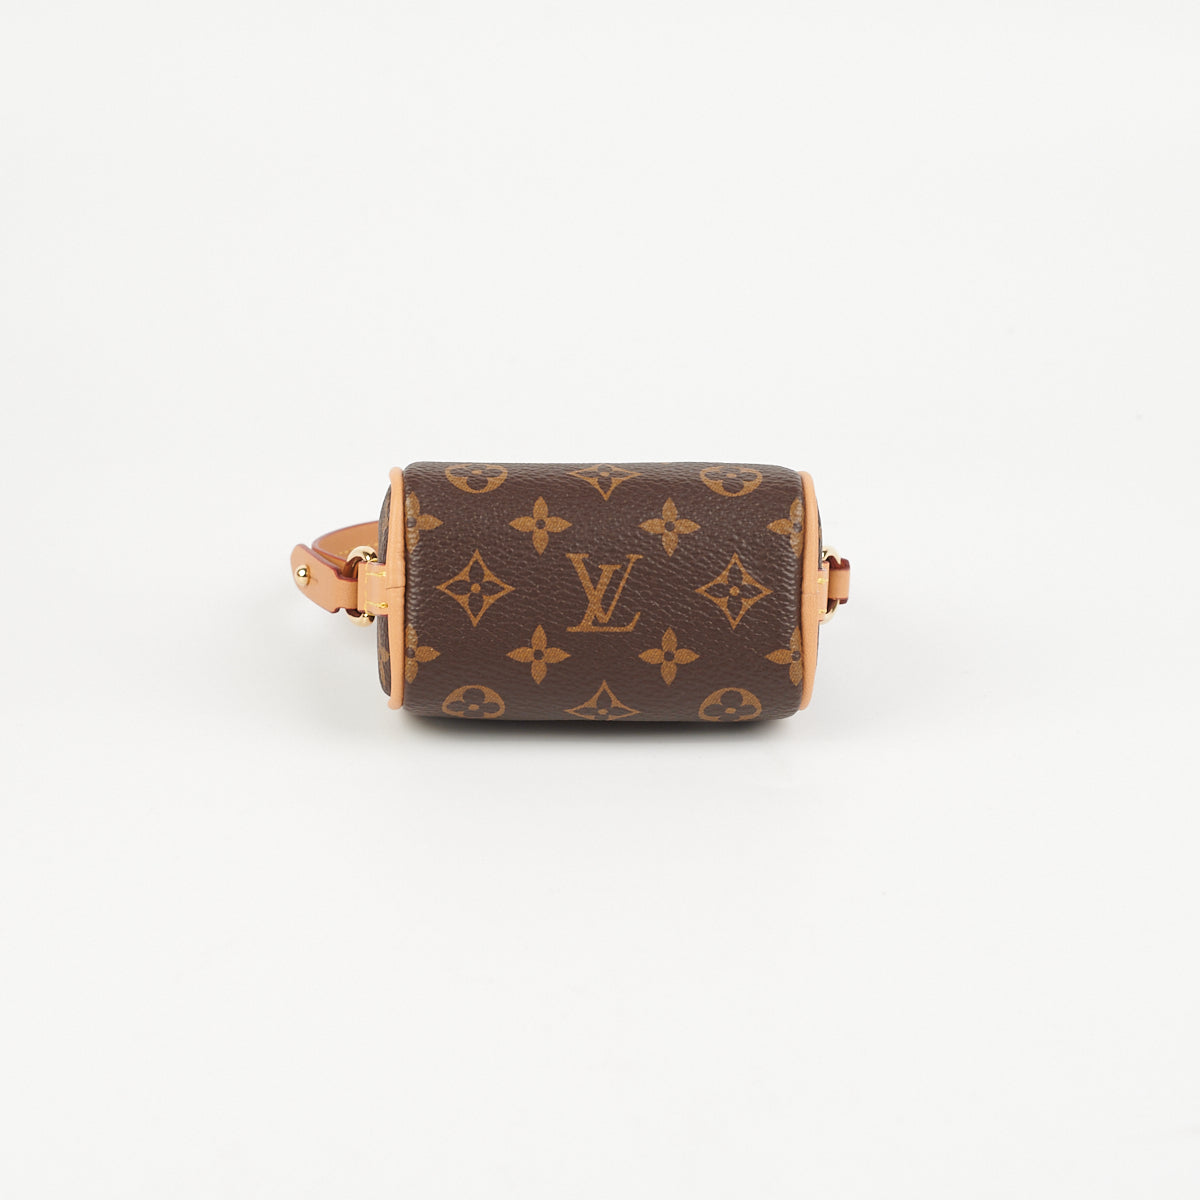 Louis Vuitton MICRO Speedy Bag Charm LV Monogram Unboxing & Impressions  SIZE COMPARISONS #luxurypl38 